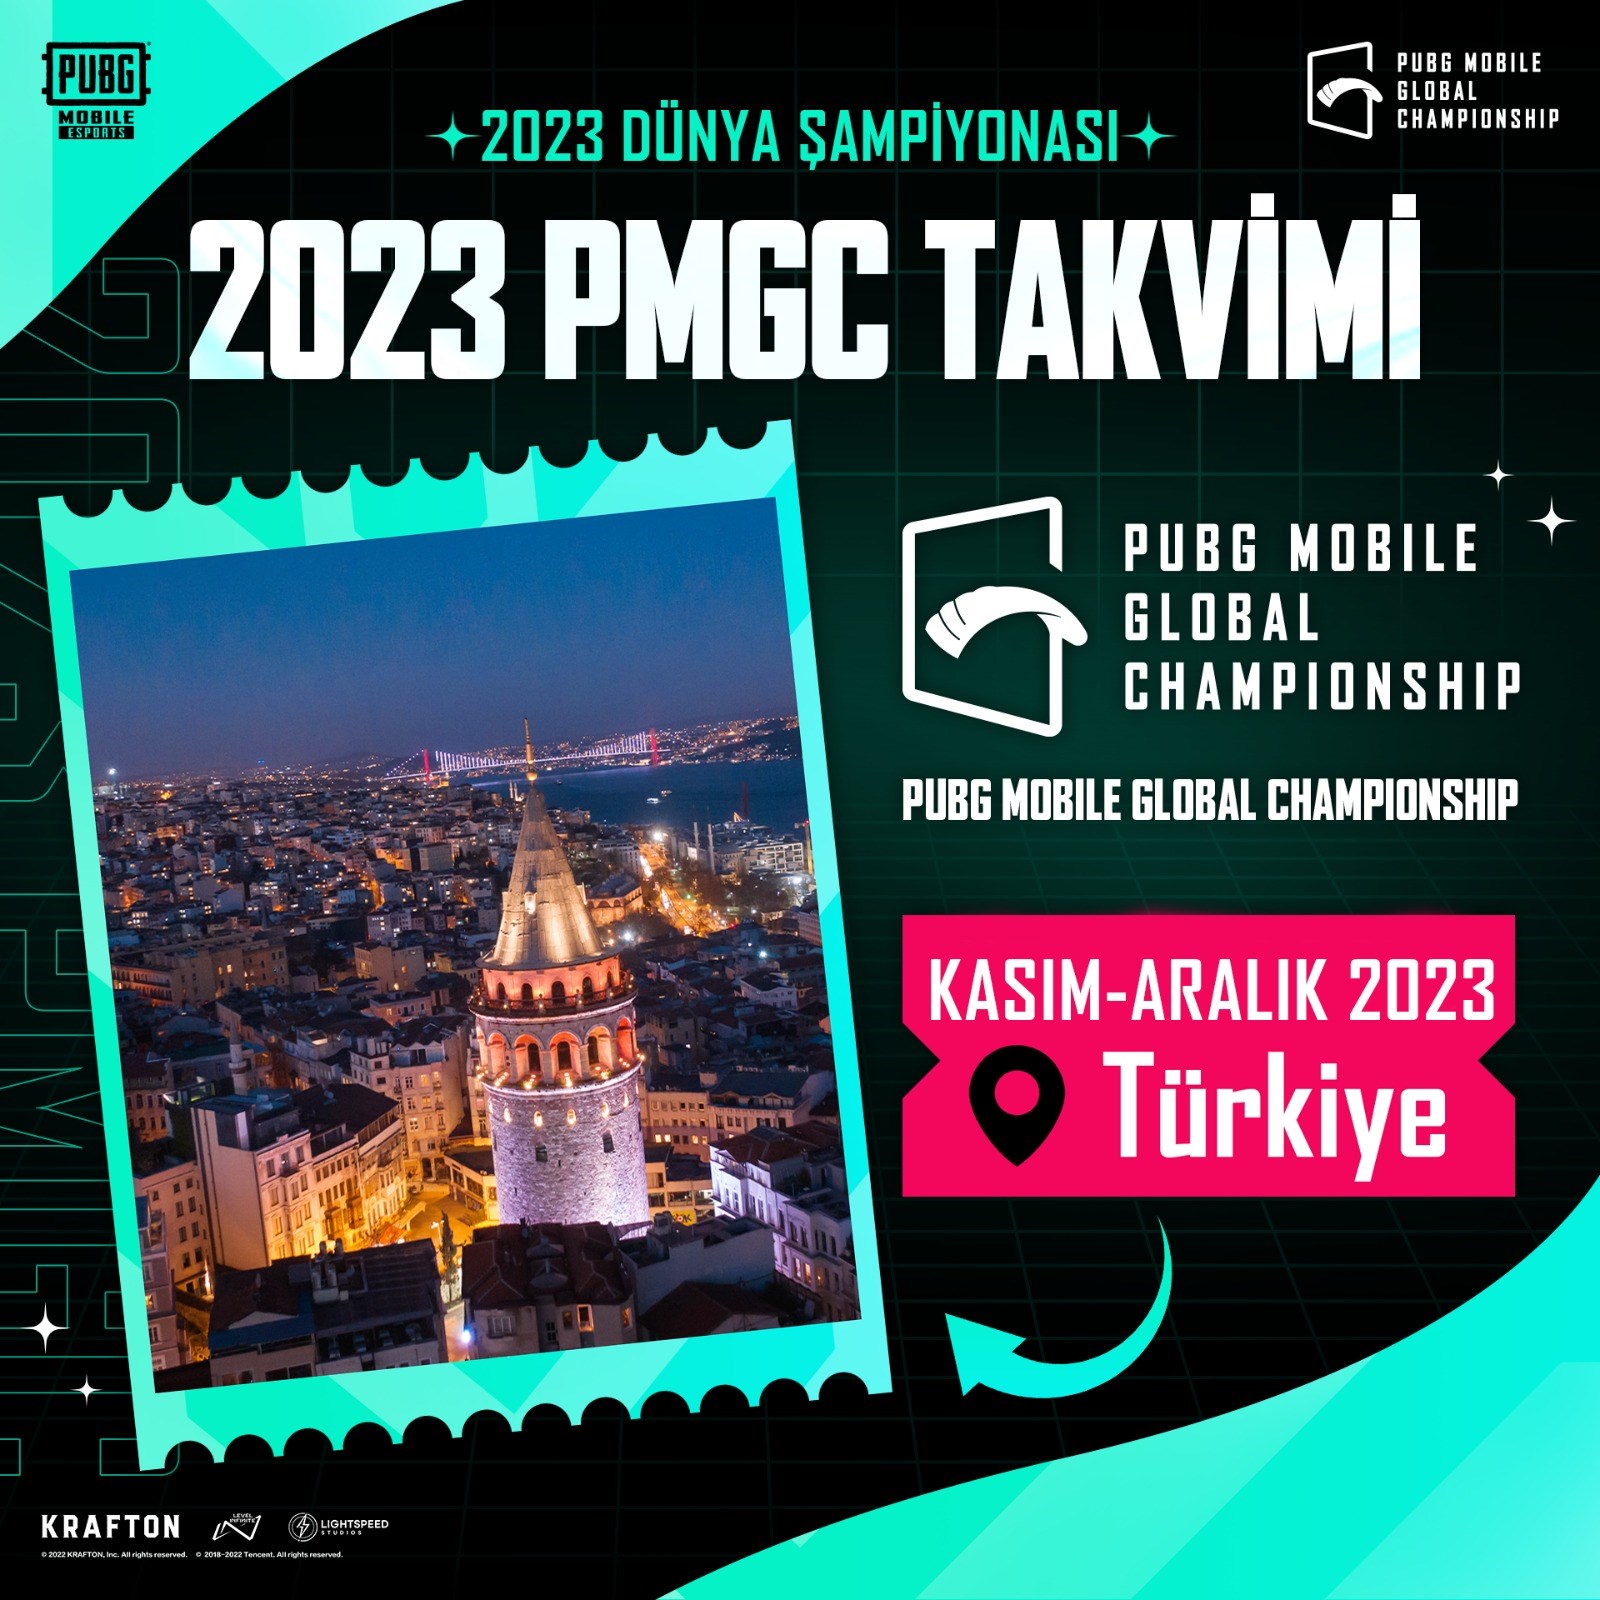 PUBG Mobile Dünya Şampiyonası 2023'te Türkiye'de